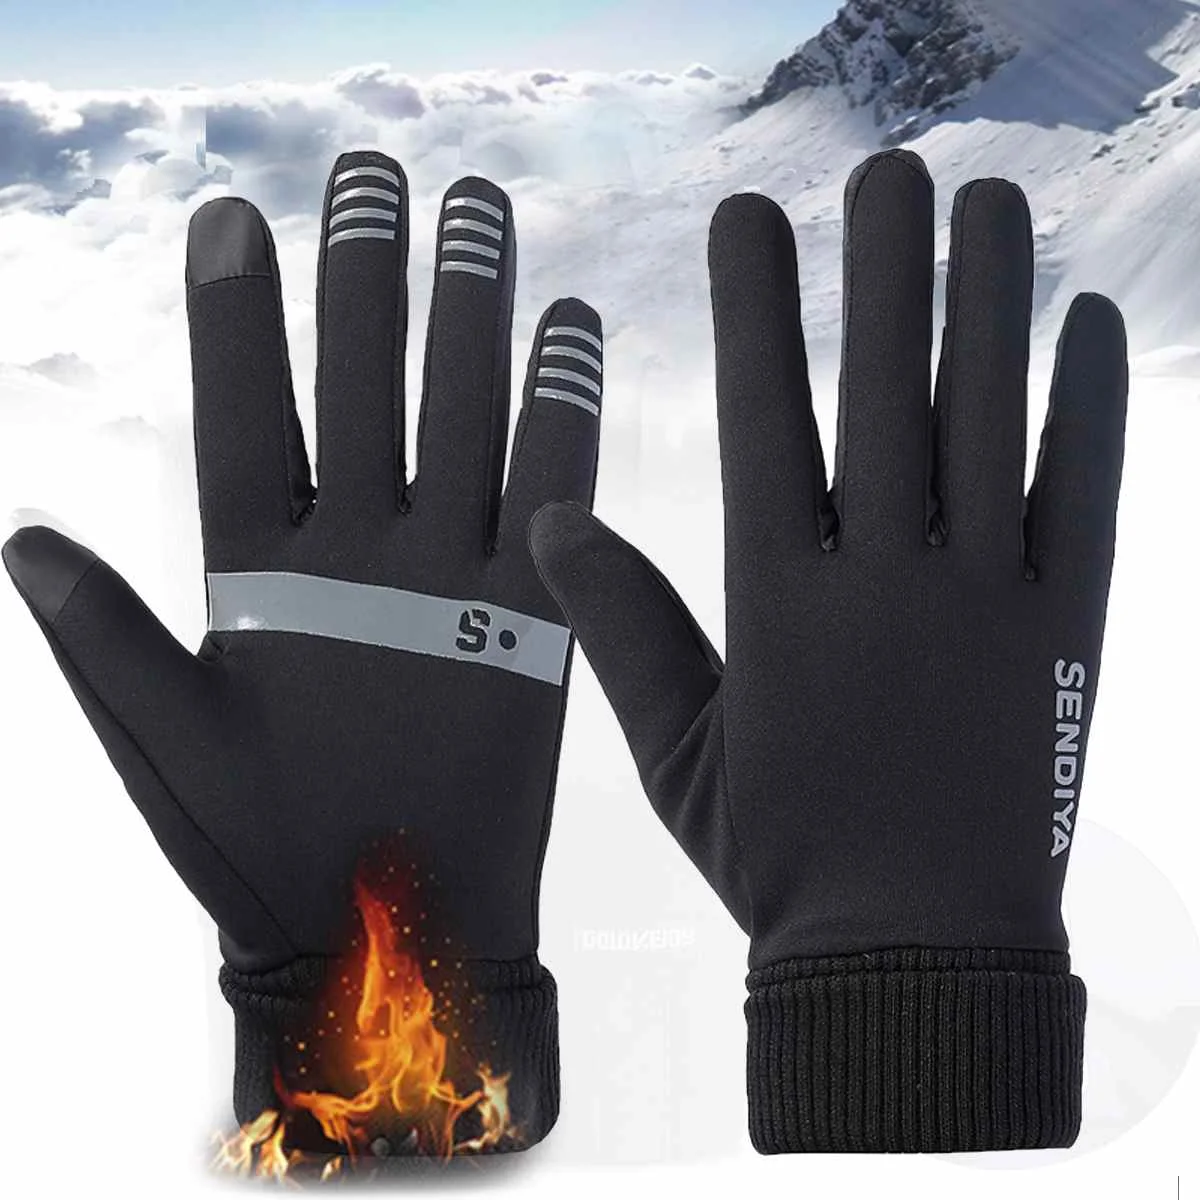 Теплые лыжные перчатки Зимние флисовые водонепроницаемые перчатки для сноуборда зимние мотоциклетные лыжные перчатки спортивная одежда для мужчин и женщин перчатки